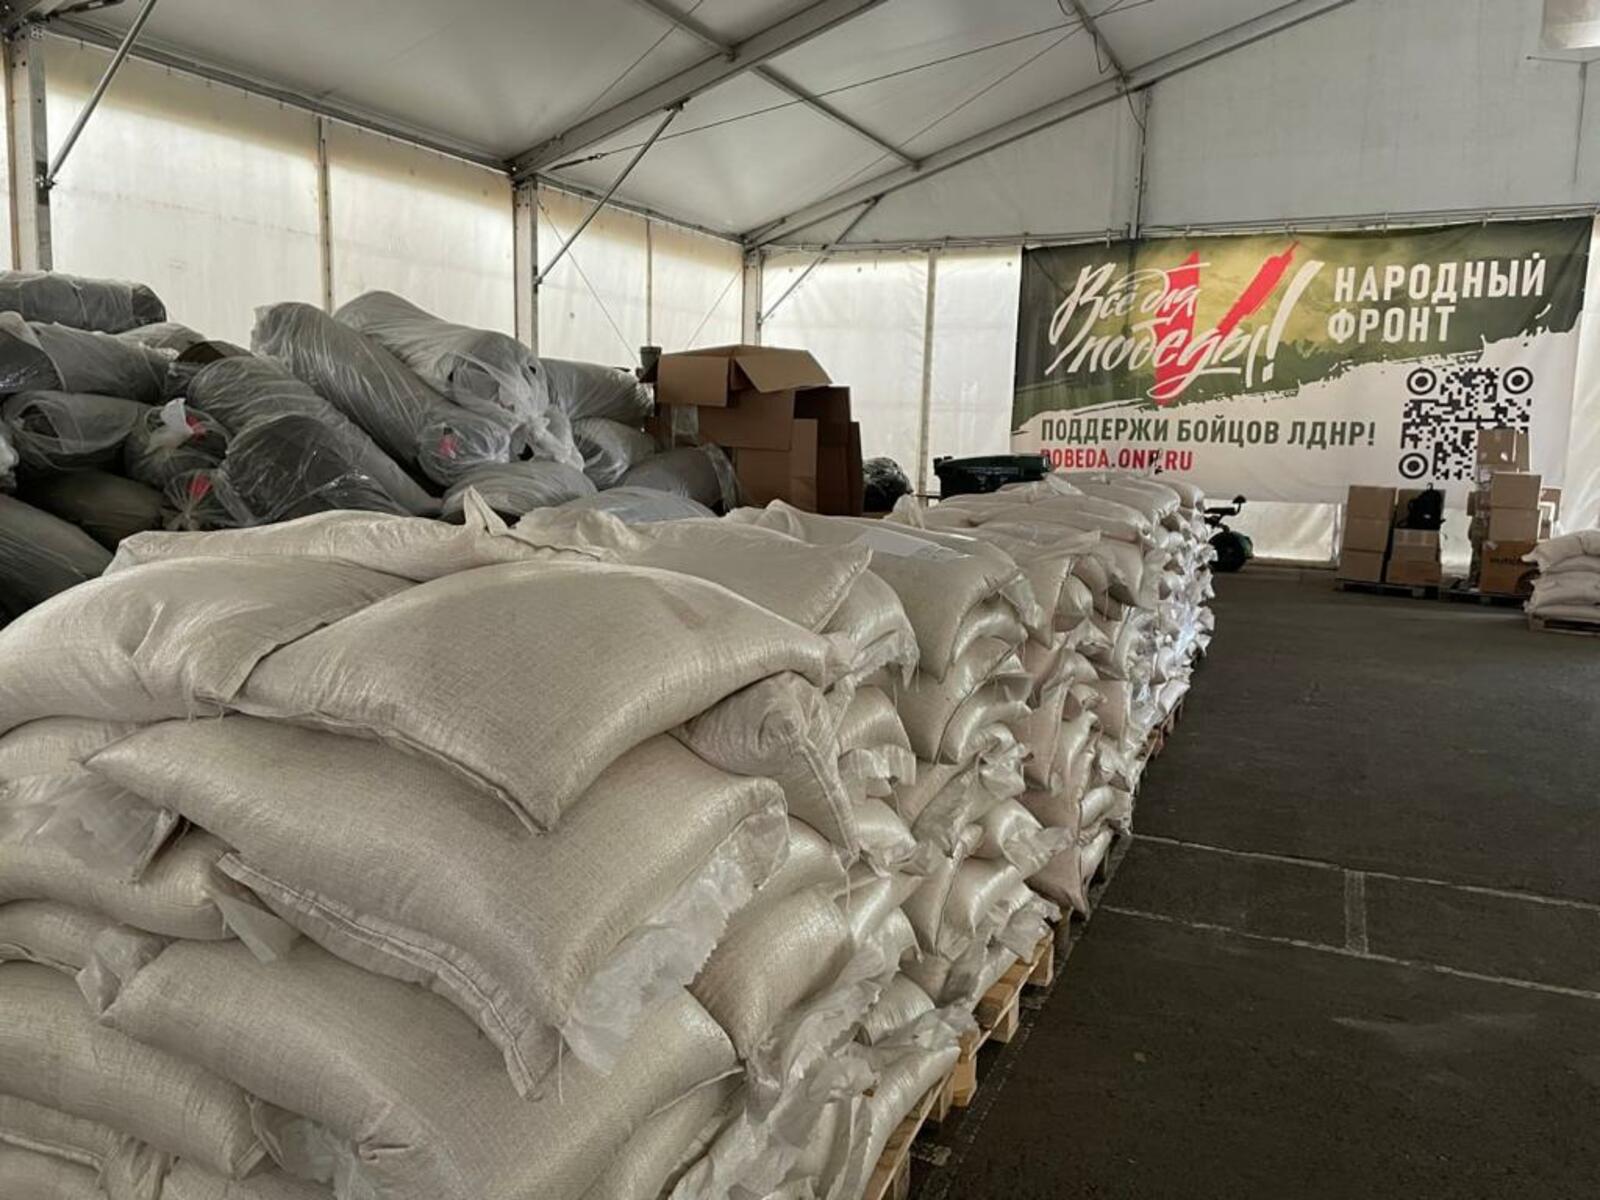 Народный фронт Башкортостана доставил тонны продуктов для жителей Херсона, пострадавших от наводнения